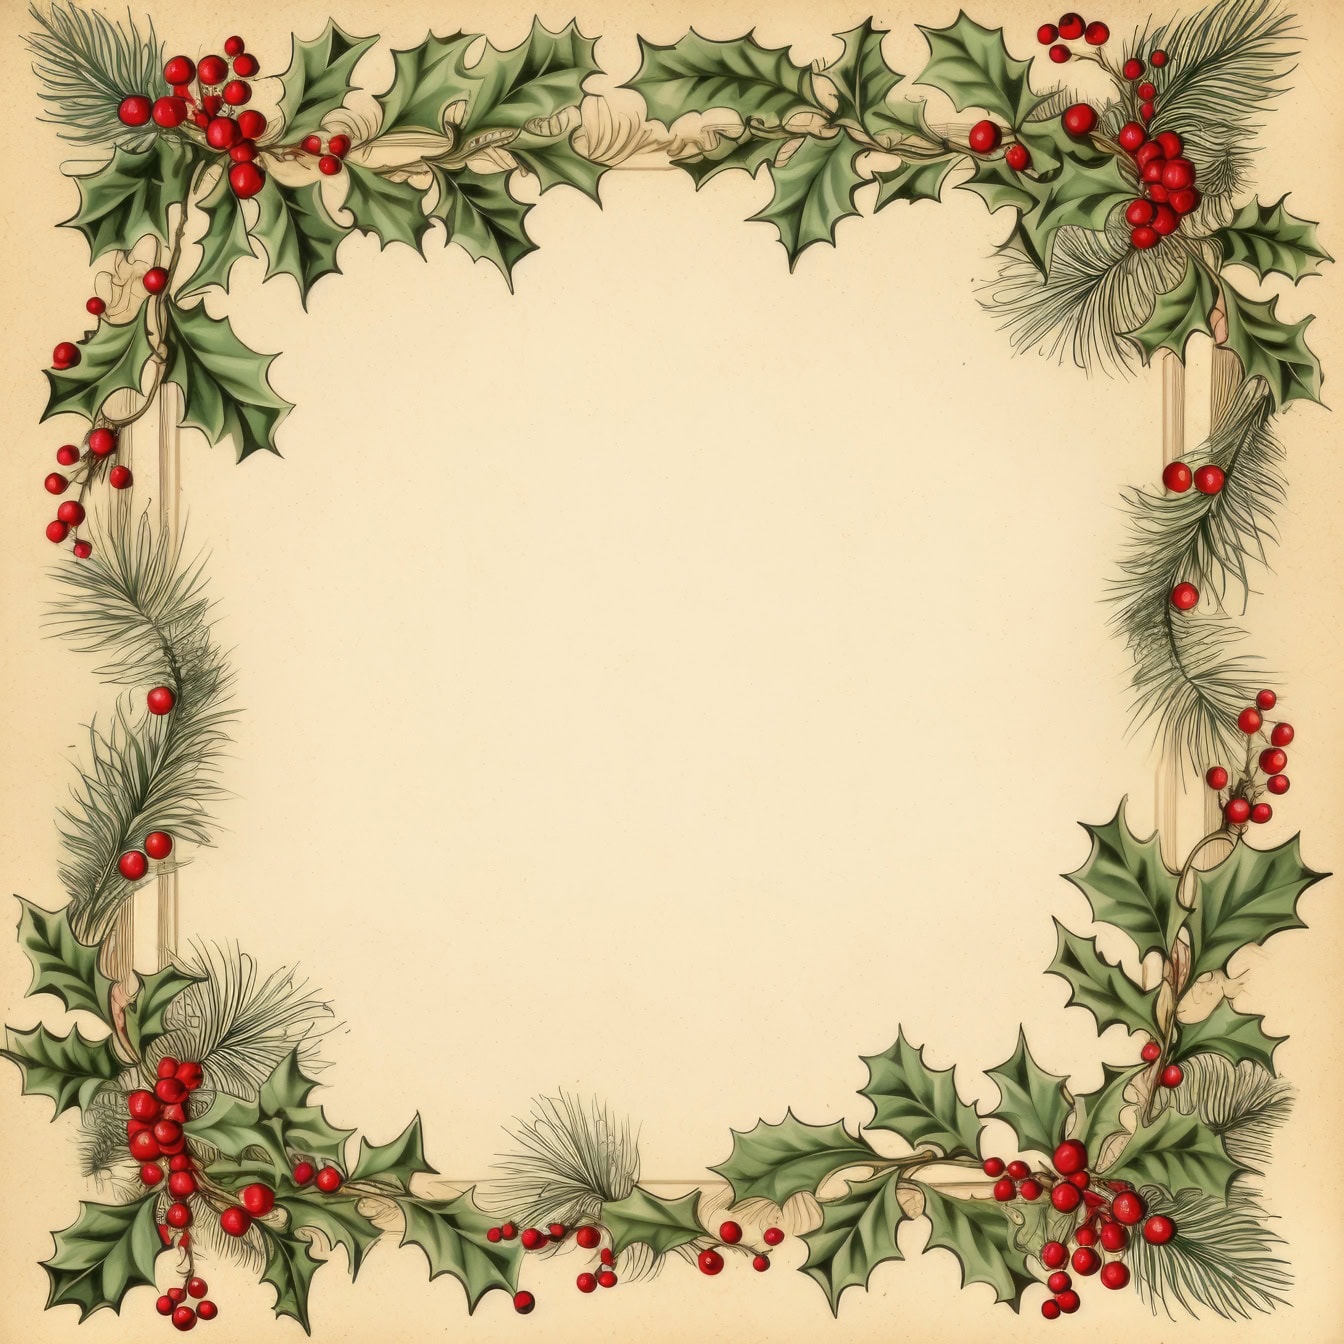 Різдвяна листівка з рамкою з вінка з гостролиста та ягід, ідеальний шаблон святкової вітальної листівки